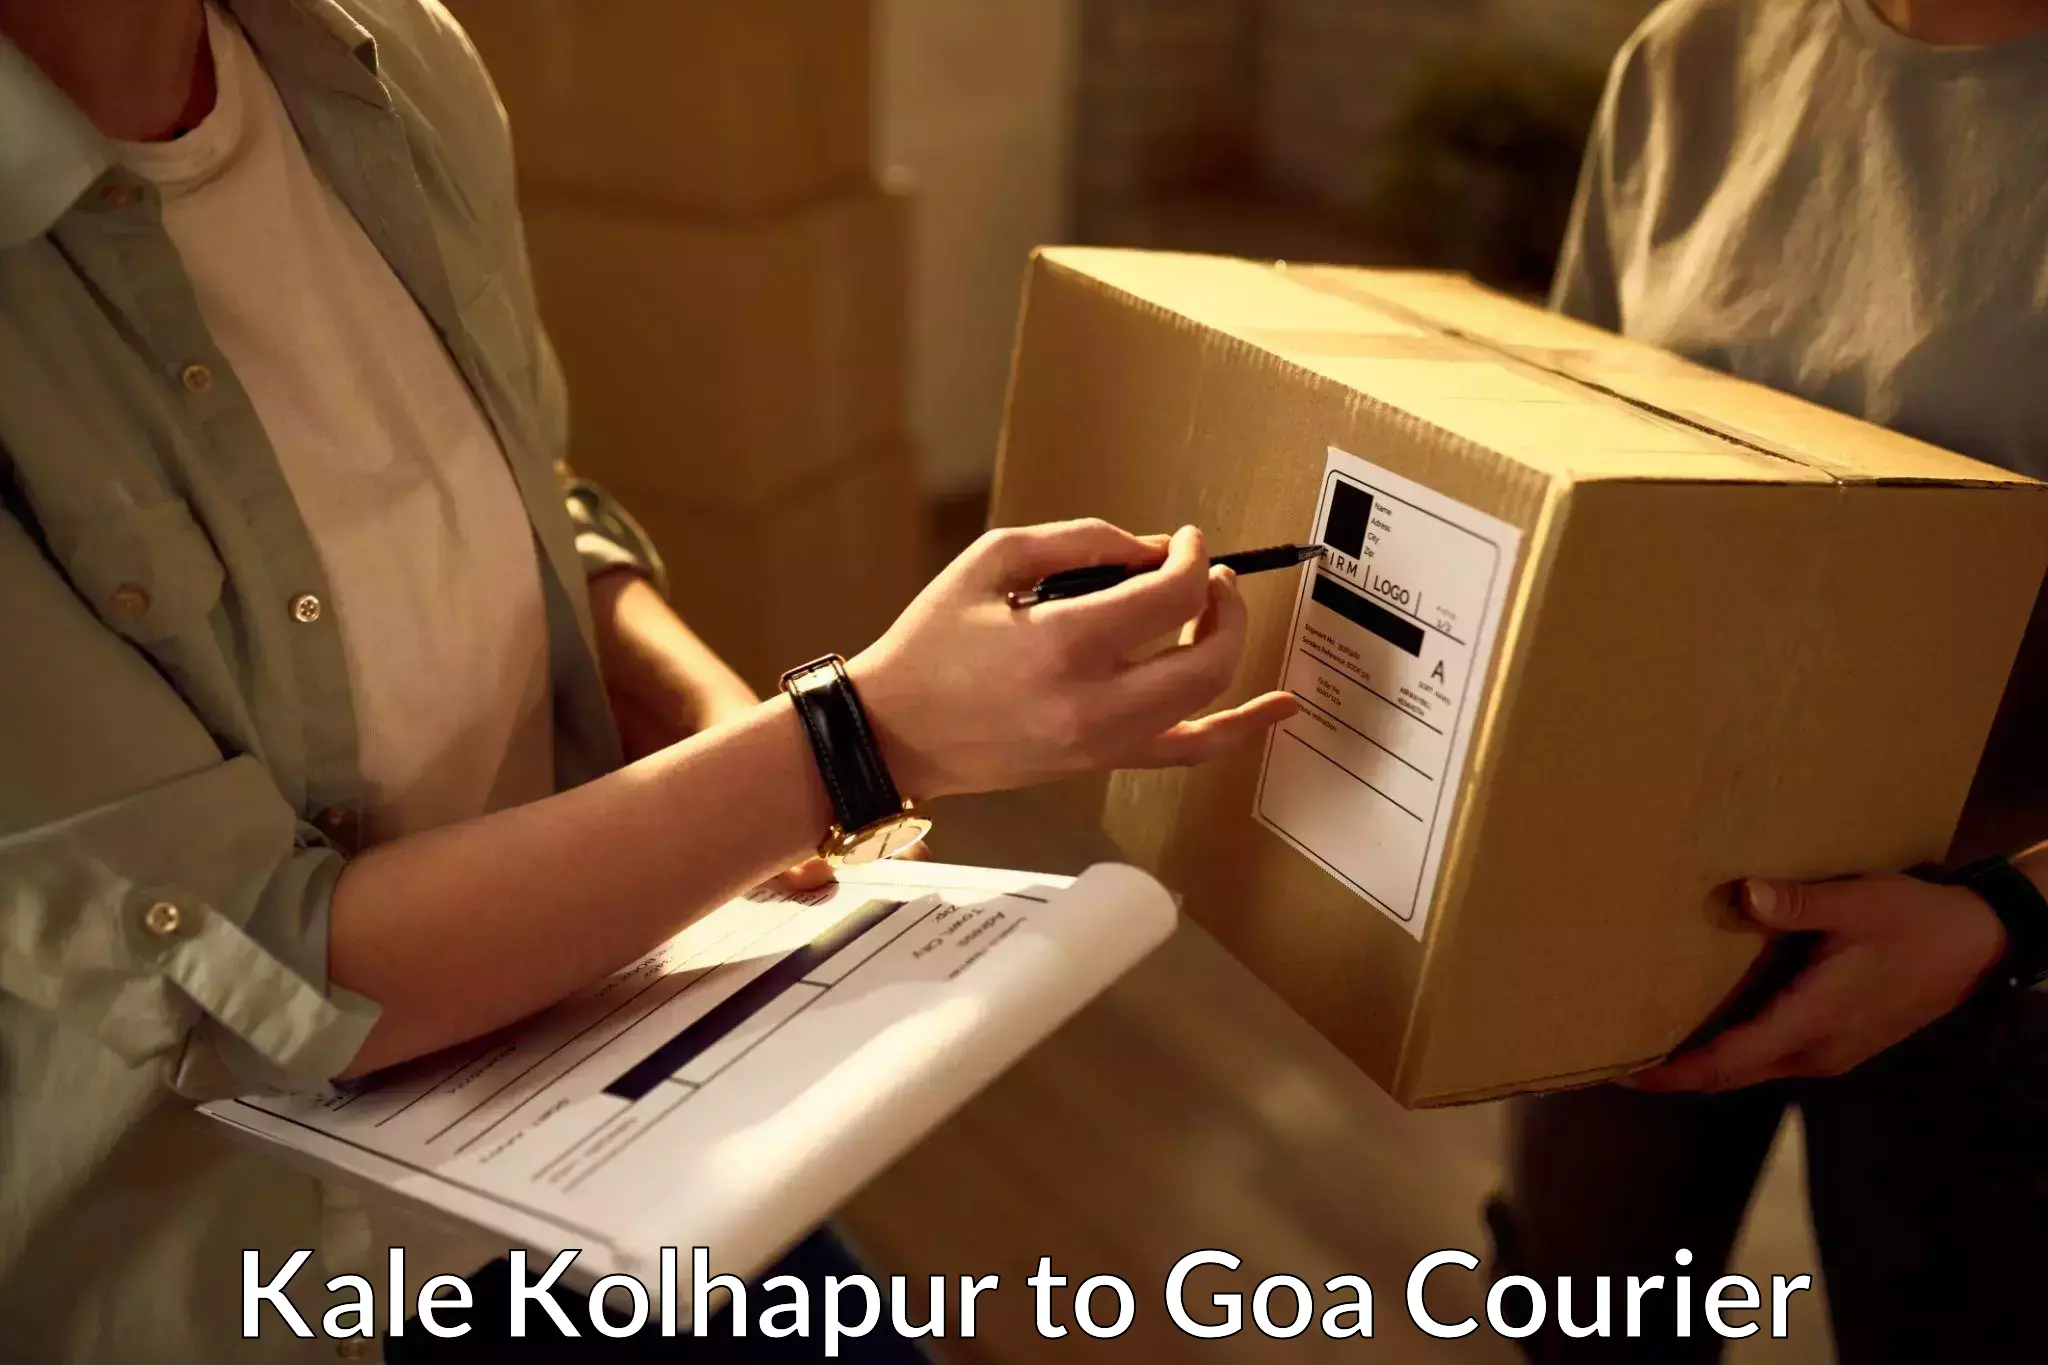 Express package handling Kale Kolhapur to NIT Goa